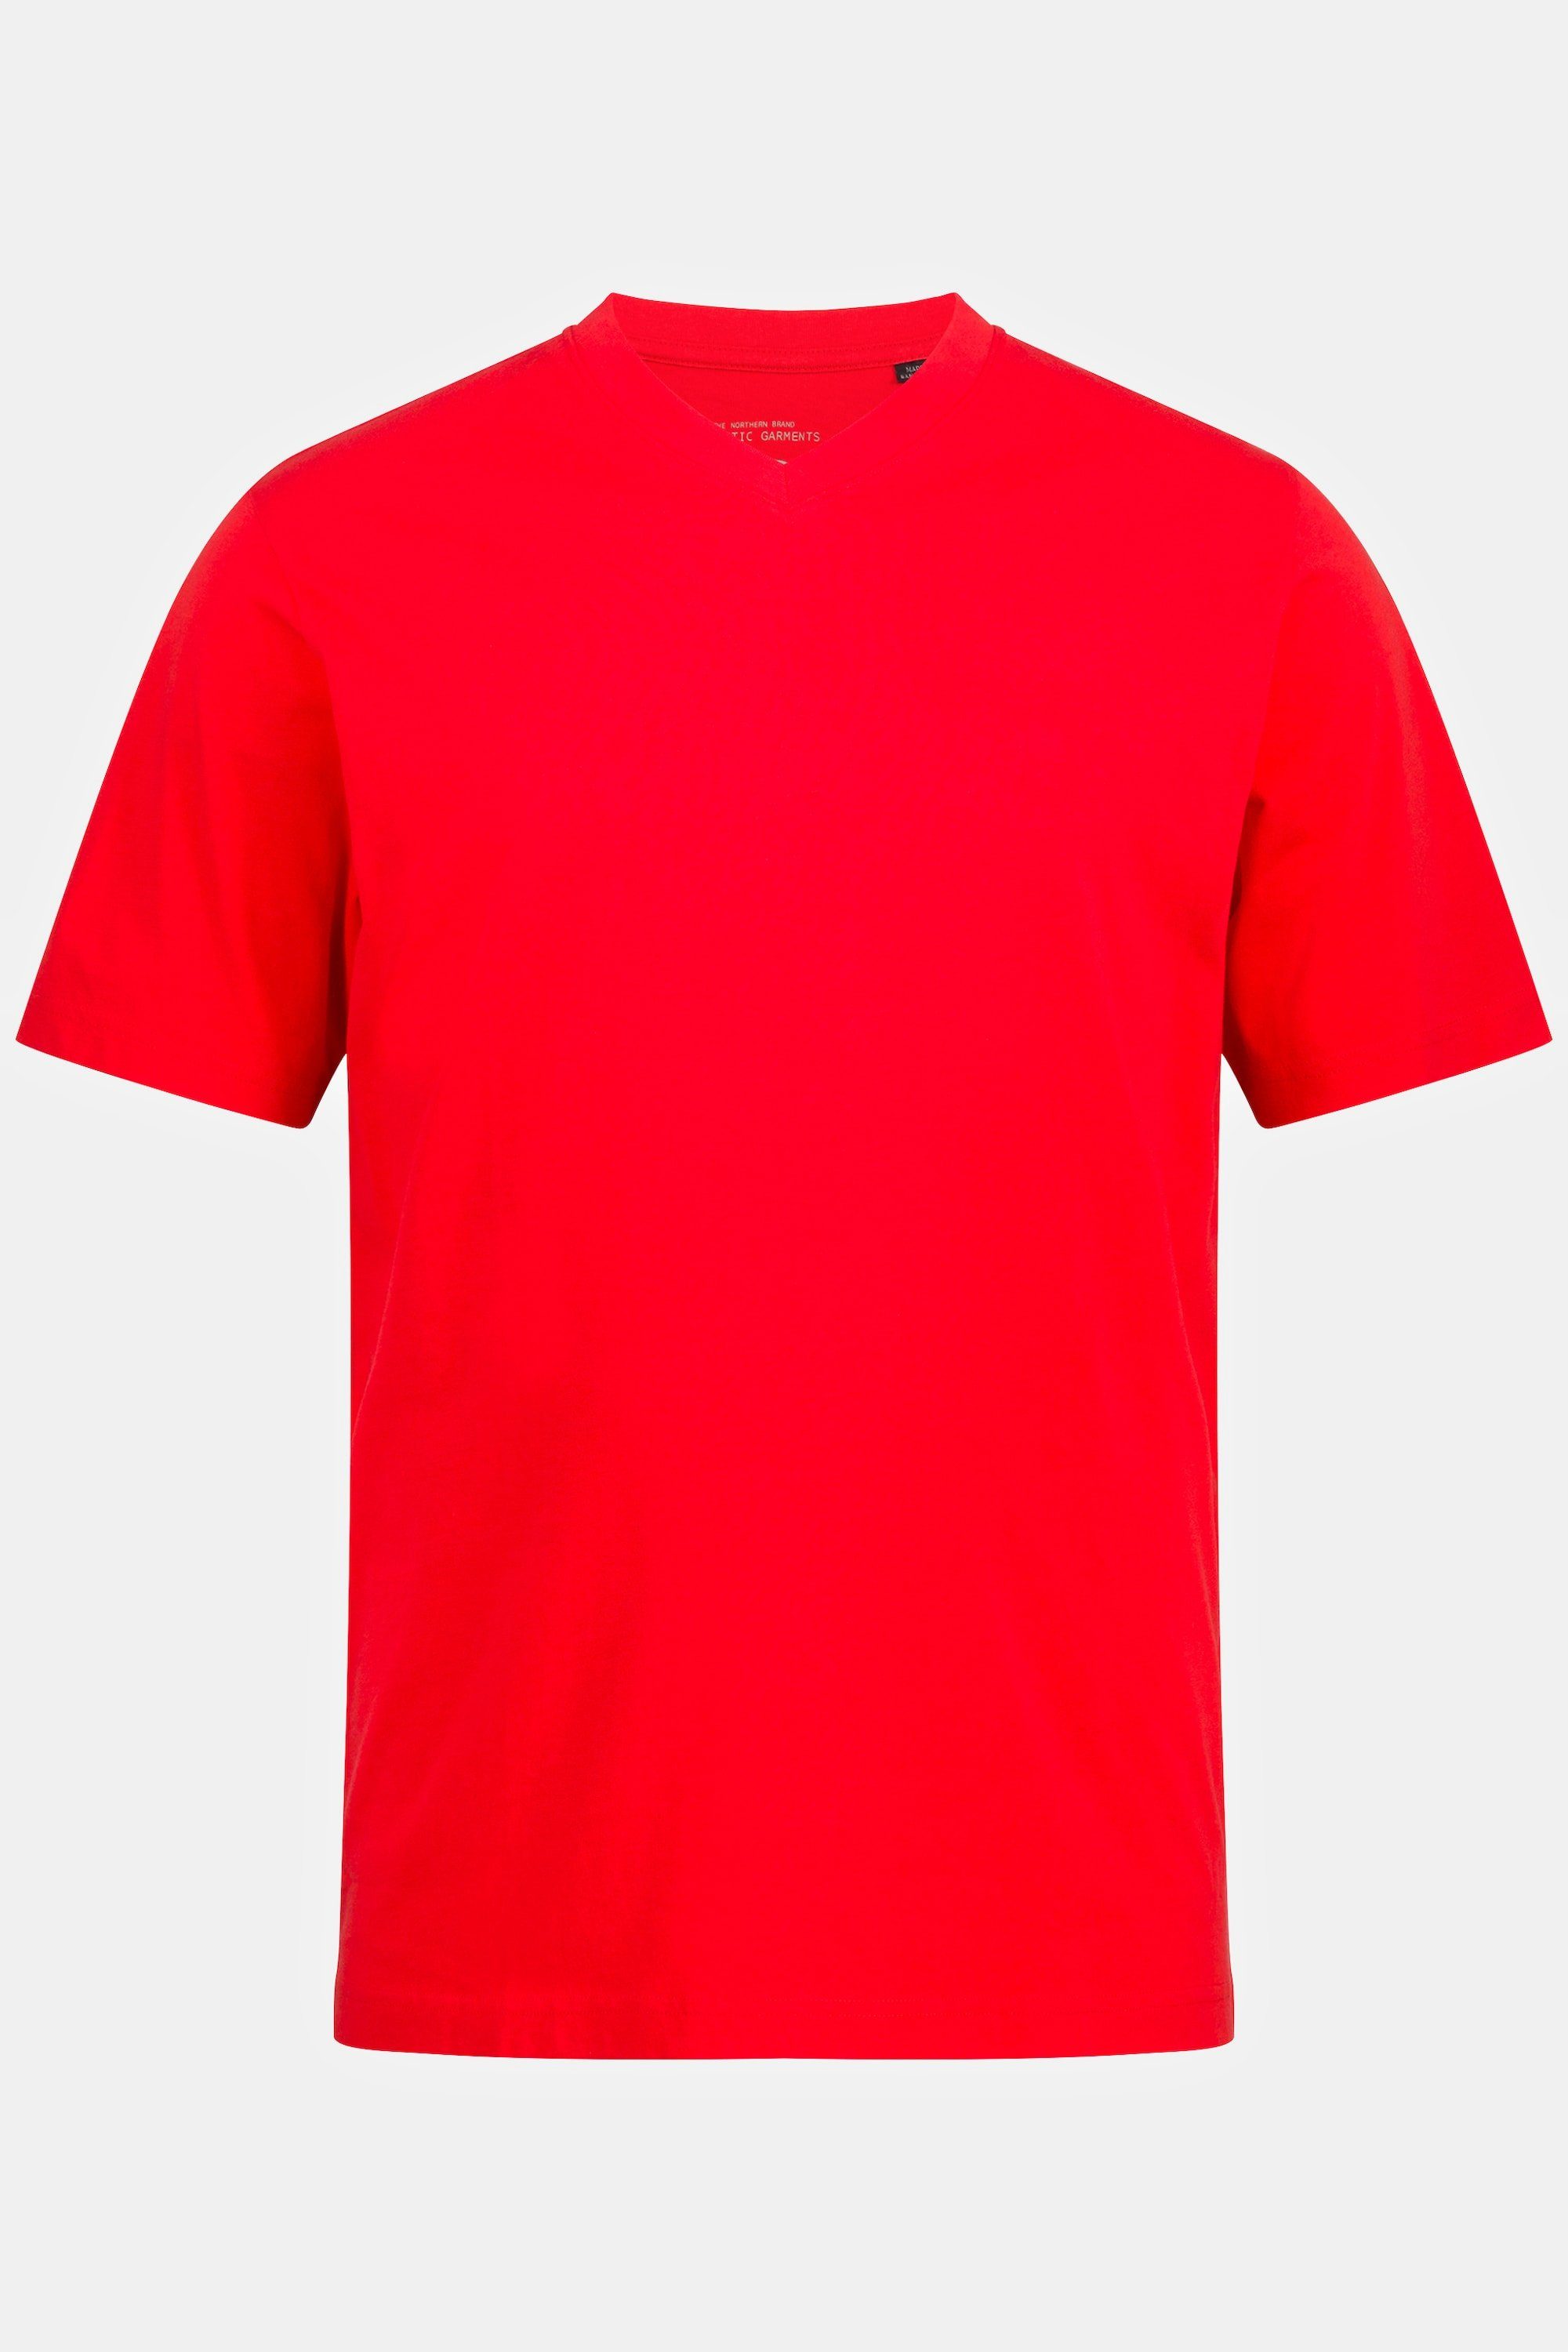 JP1880 T-Shirt T-Shirt V-Ausschnitt bis Basic 8XL paprikarot